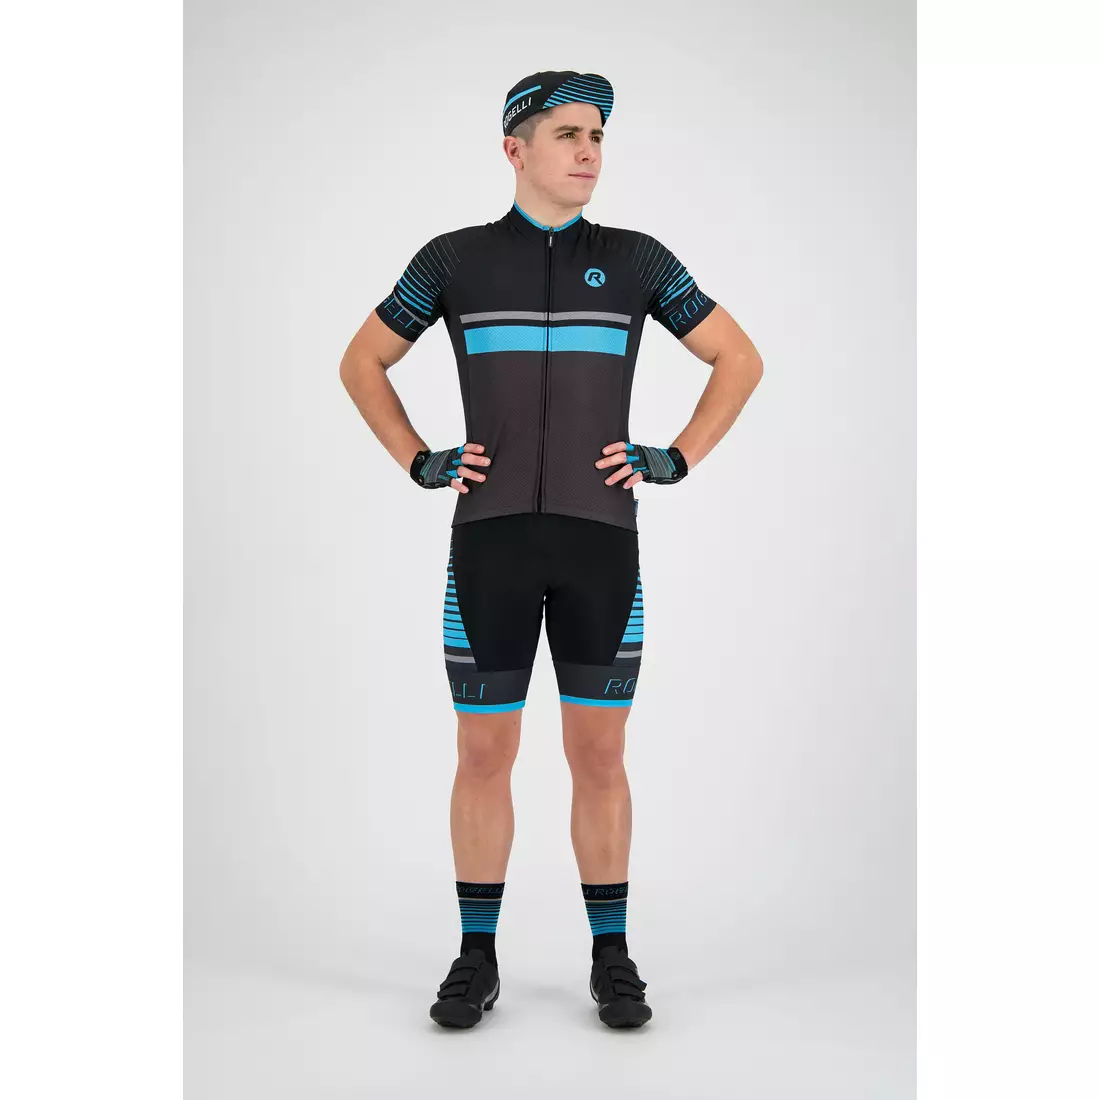 ROGELLI HERO 001.262 pánský cyklistický dres šedo-černo-modrý